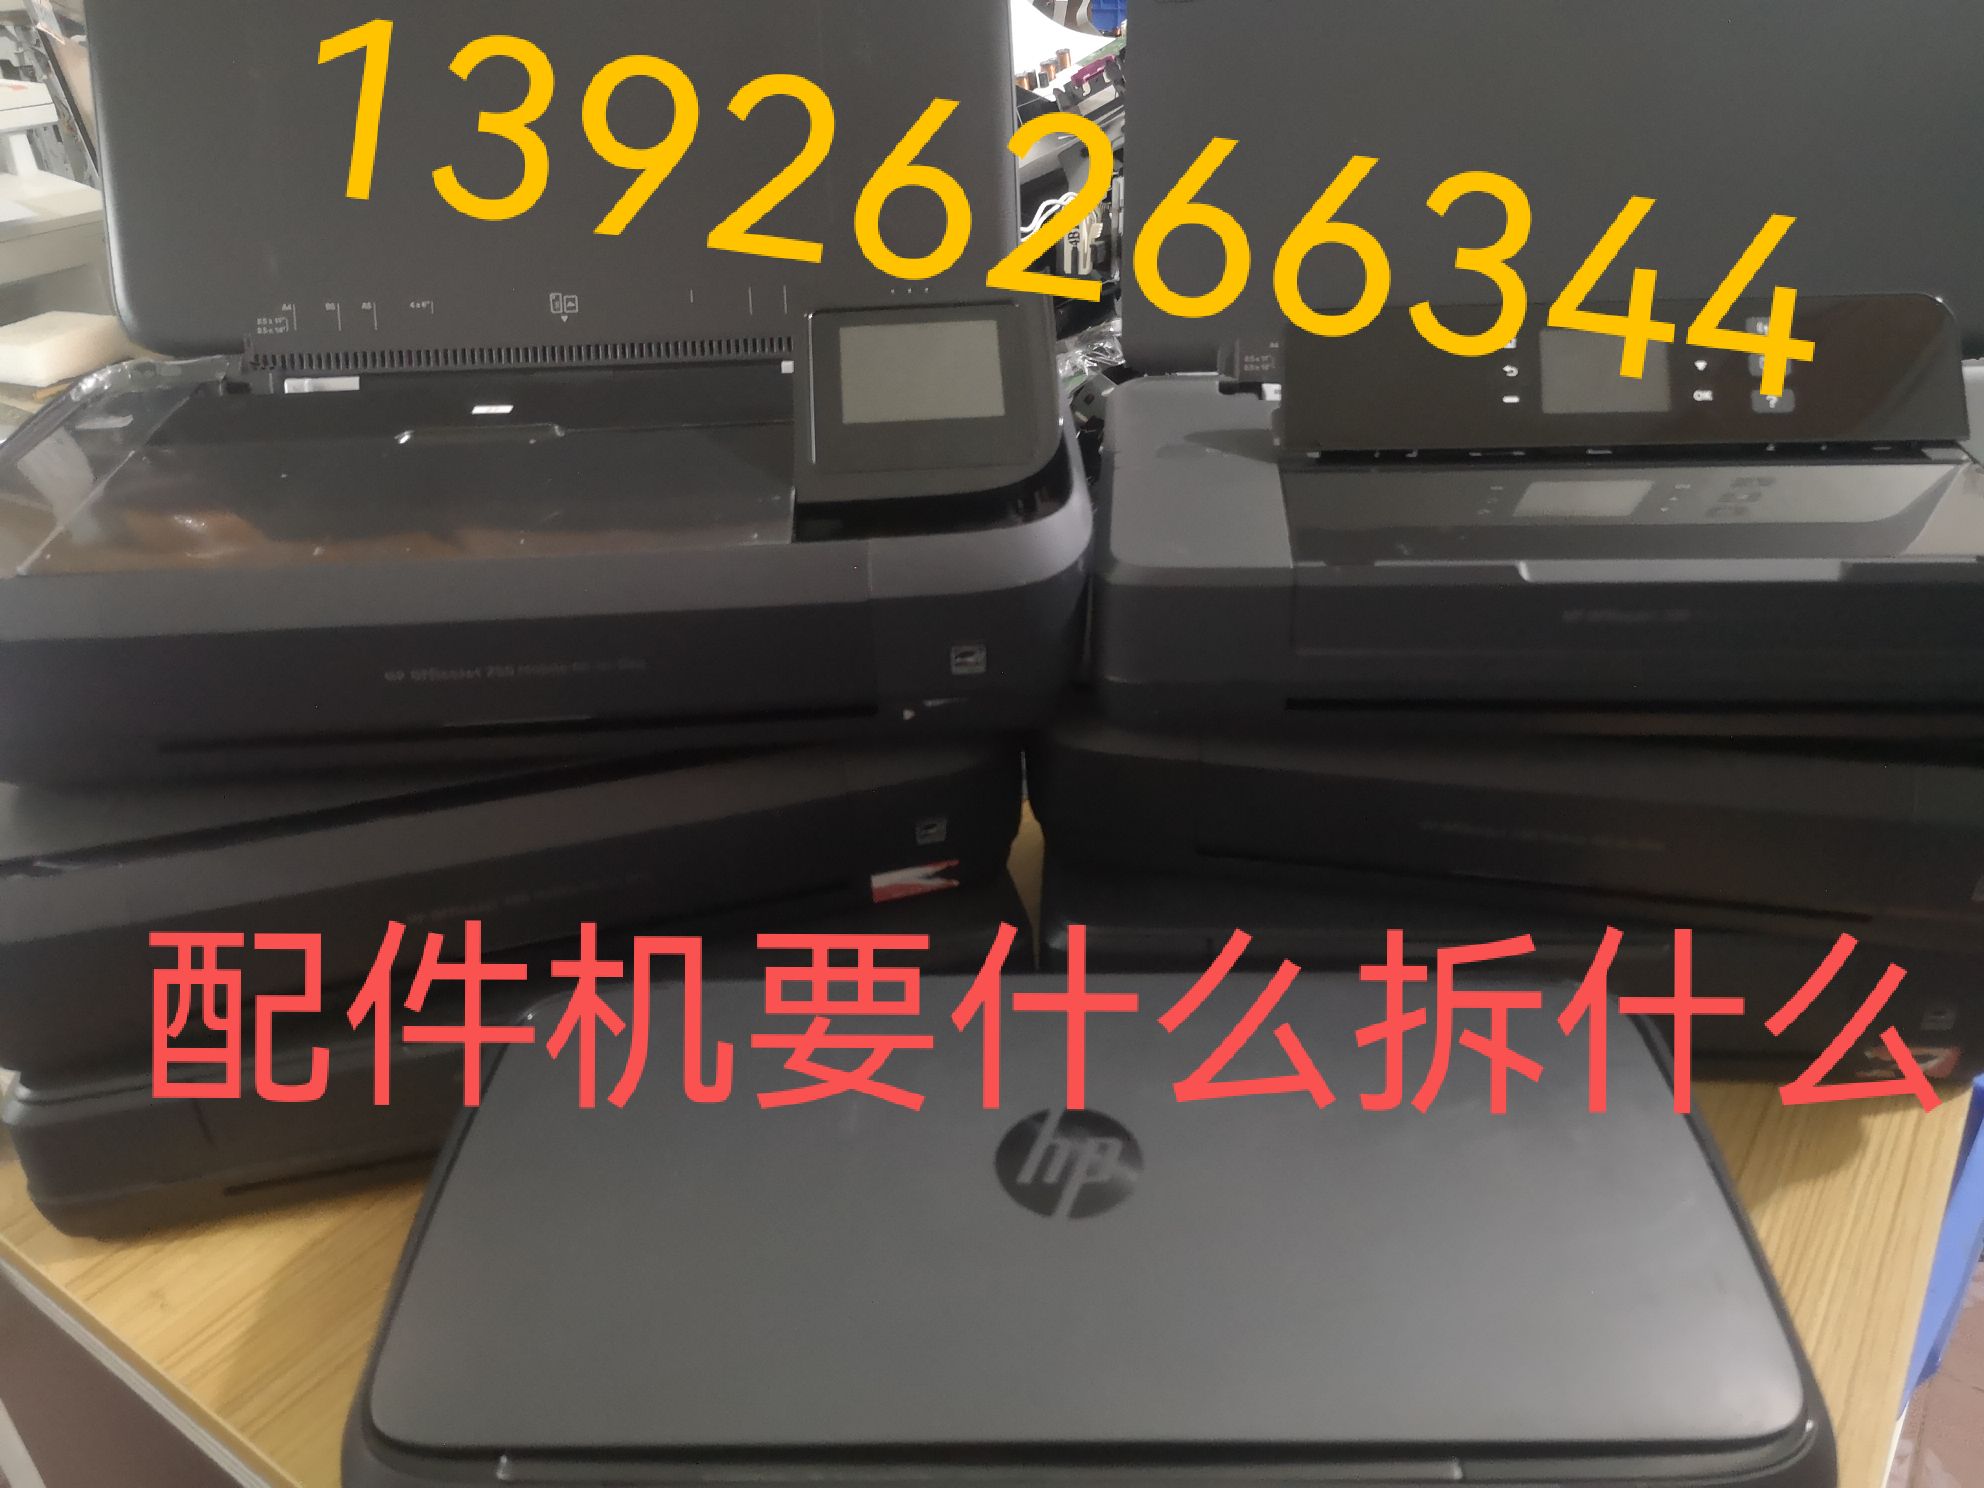 惠普HP OfficeJet200 258便携式打印机 配件进纸器显示屏光珊上盖